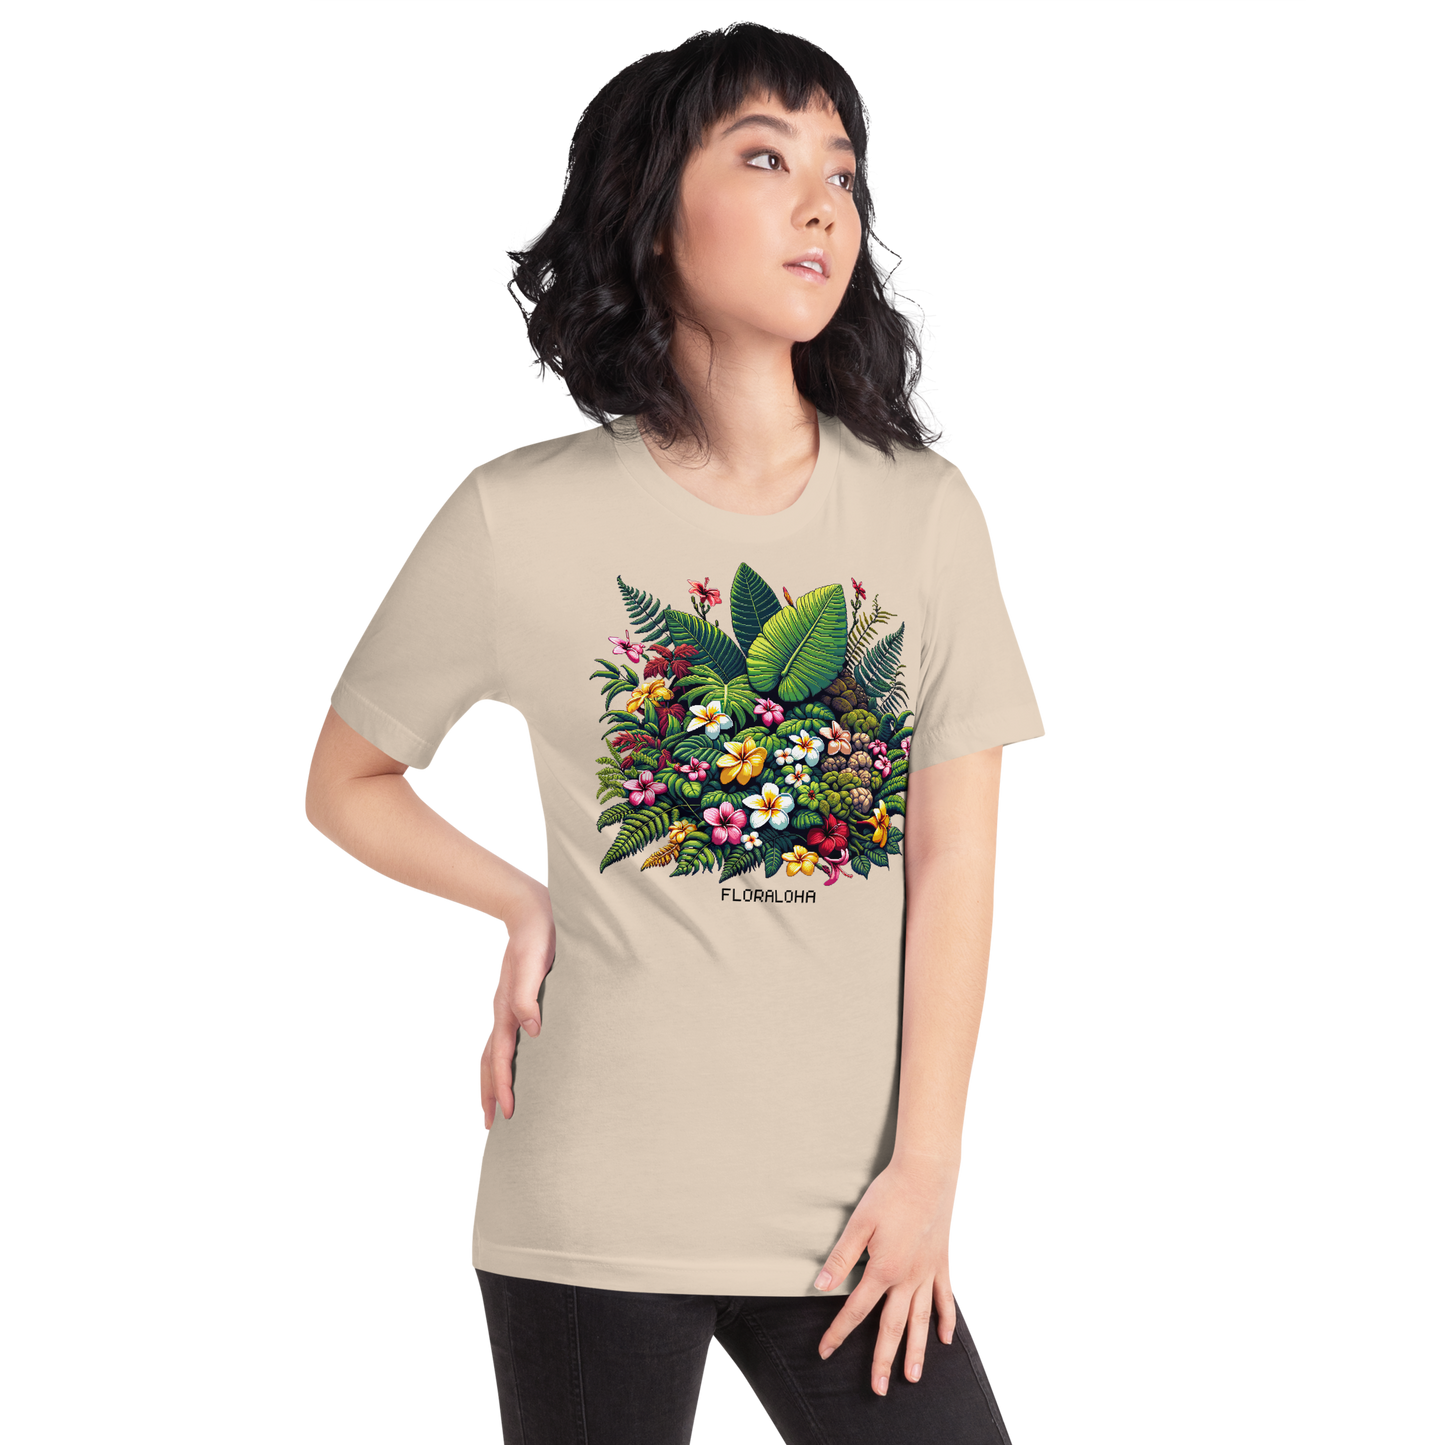 "Floraloha" Unisex Shirt w/ Text